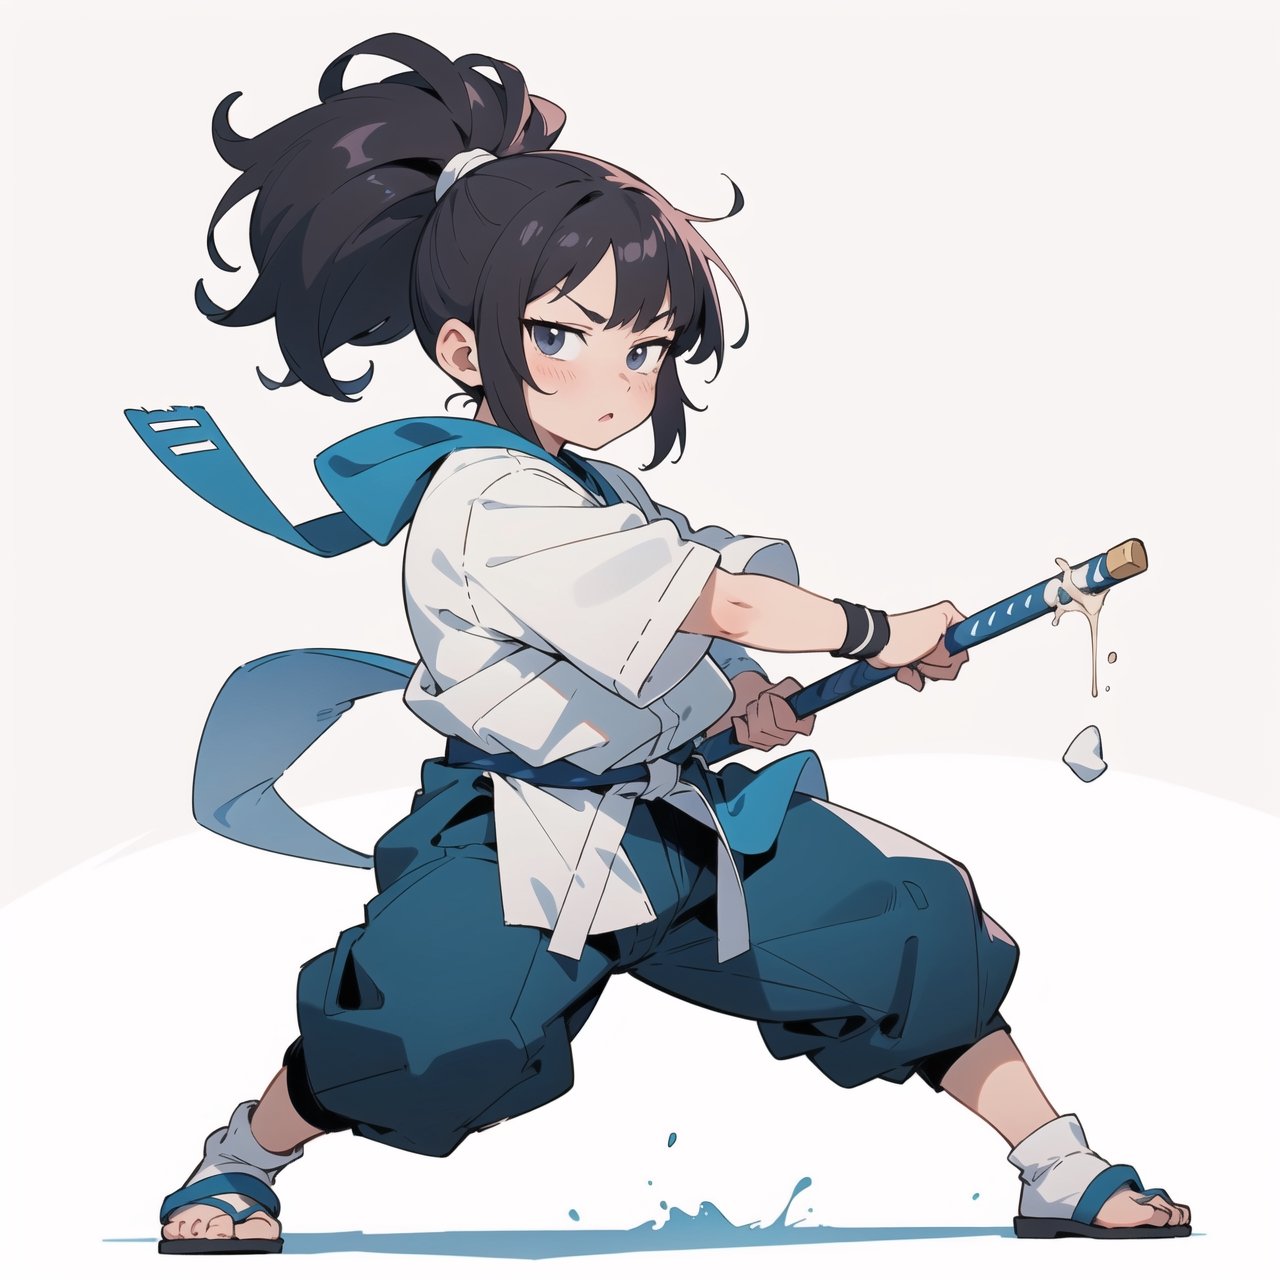 anime illustration of a cute chubby martial artist girl, fighting stance, anime, shortstack,shortstack